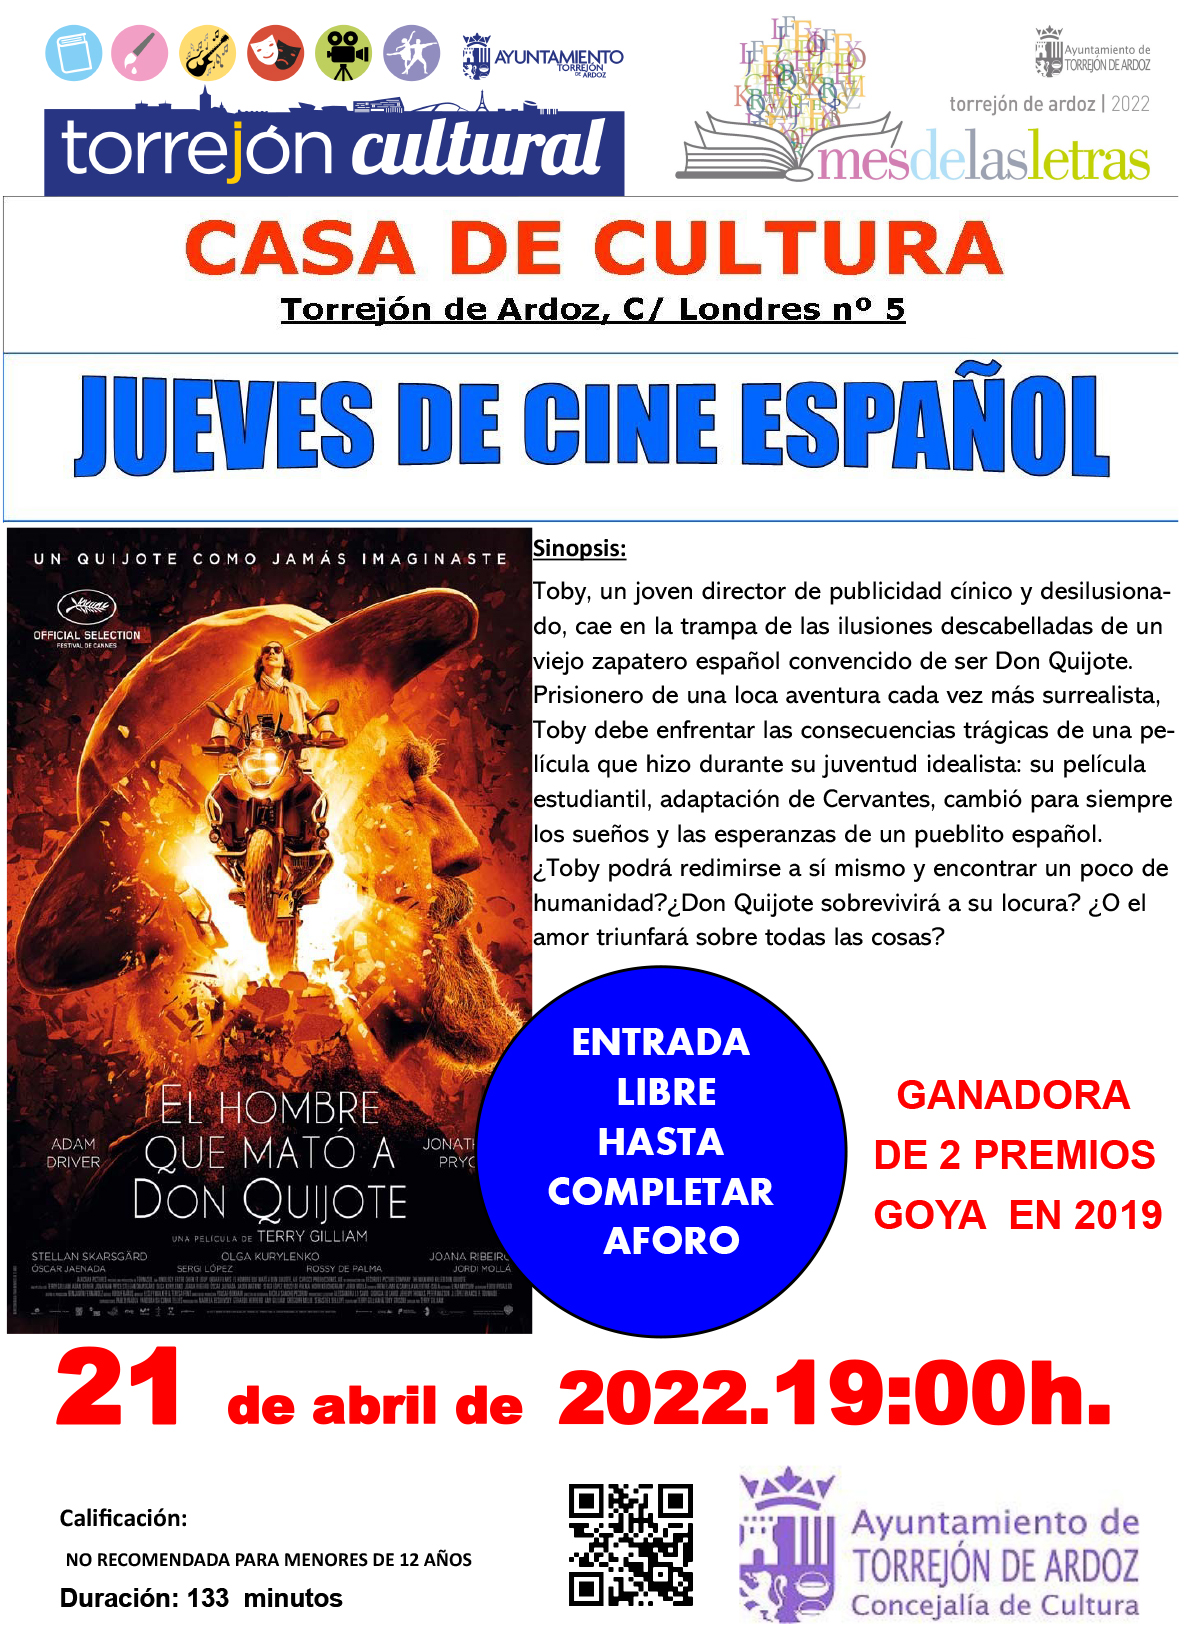 Jueves de cine español: El hombre que mató a Don Quijote